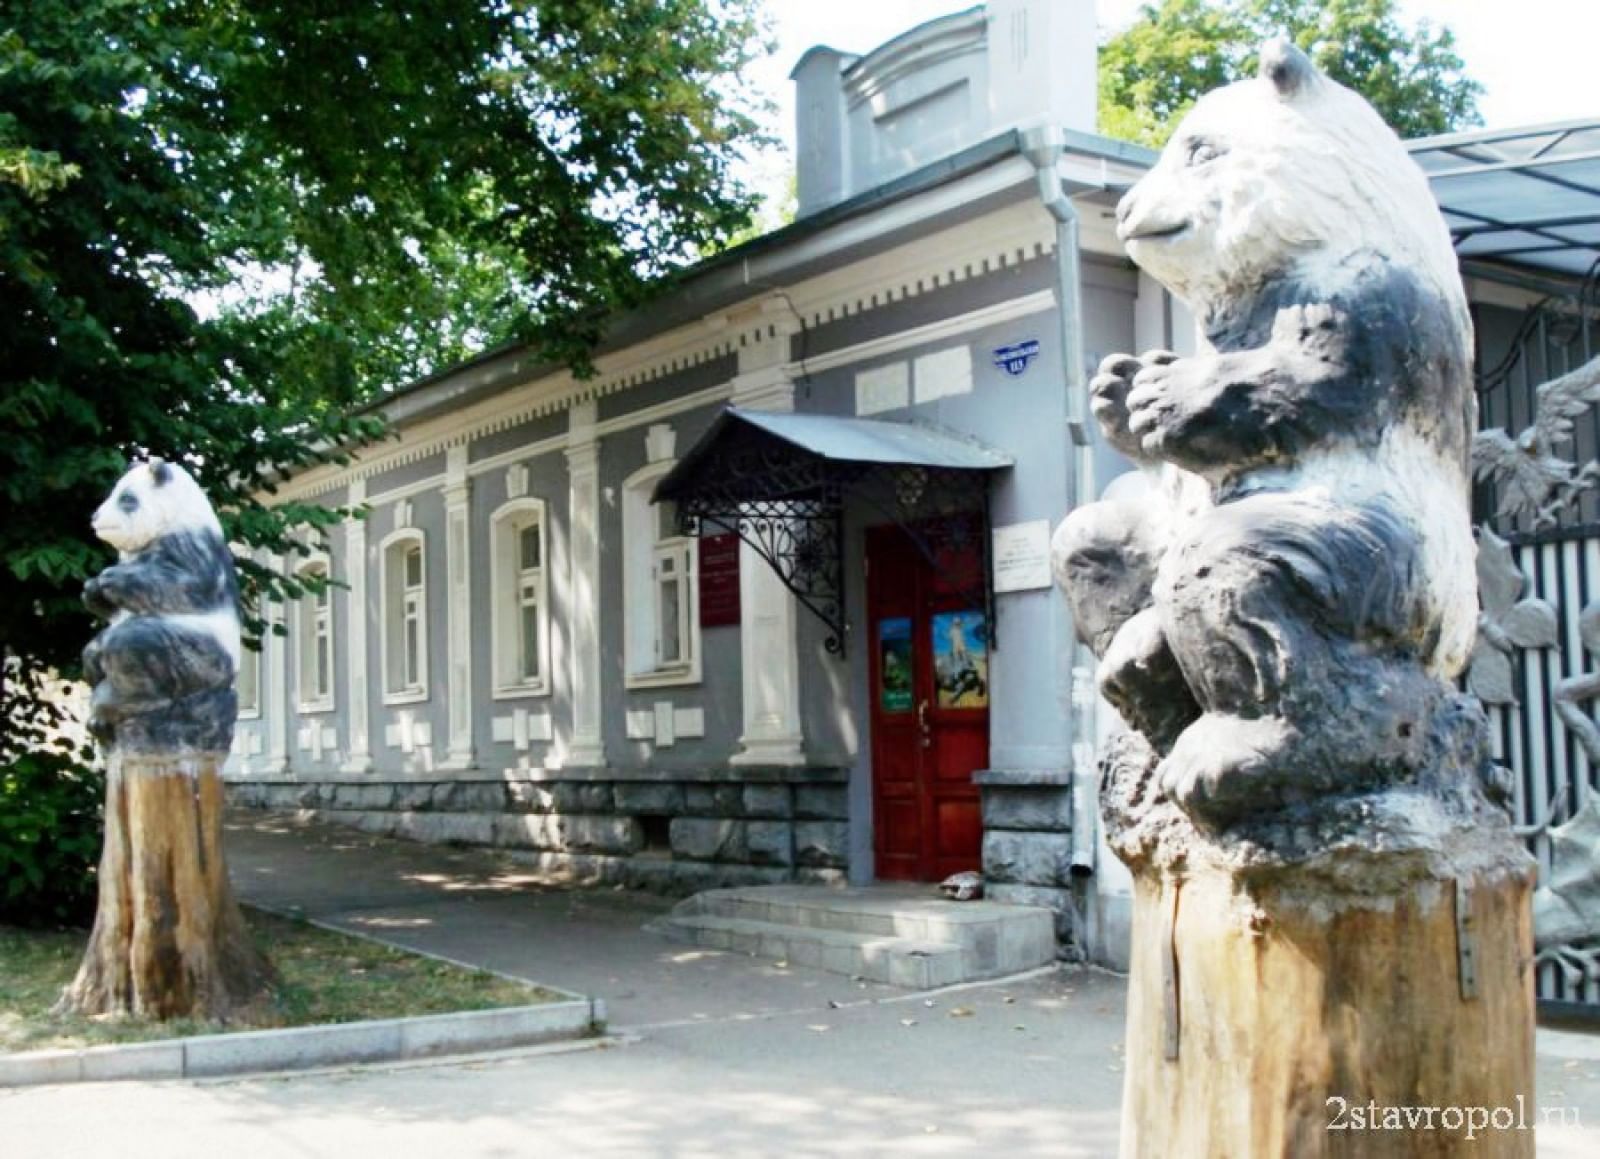 Ставропольский краевой зооэкзотариум, Ставрополь